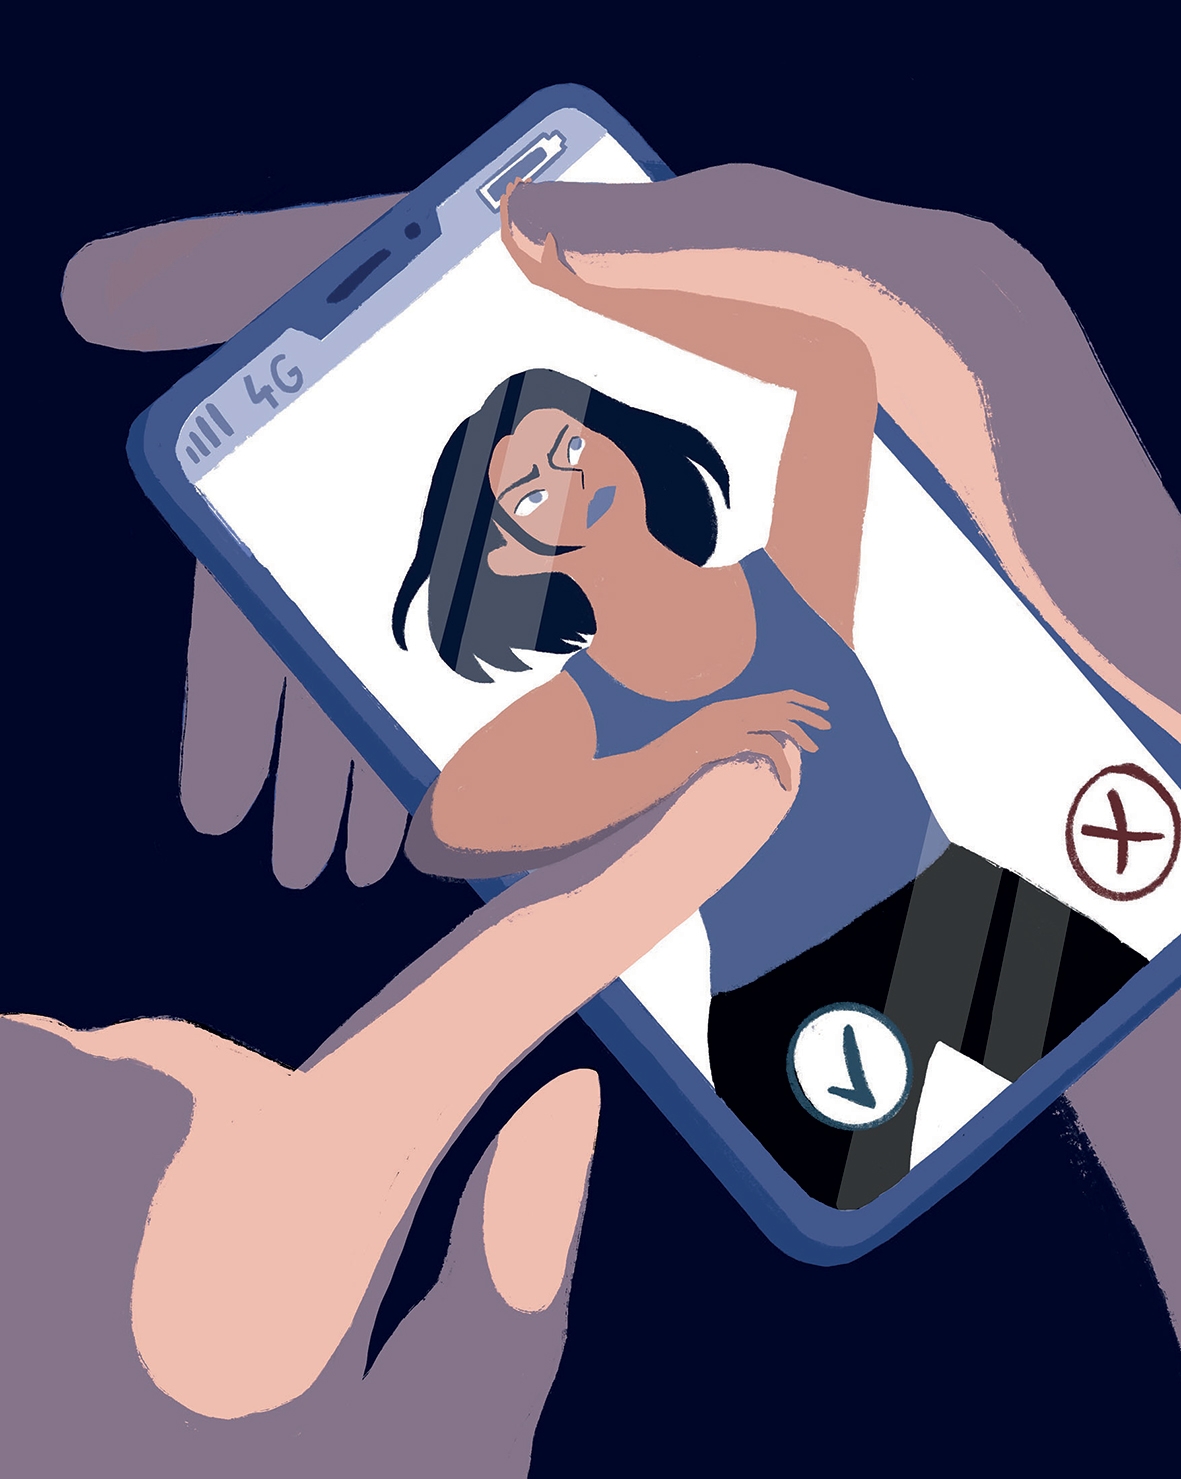 Harcèlement, violences sexuelles: Quand Tinder vire au cauchemar